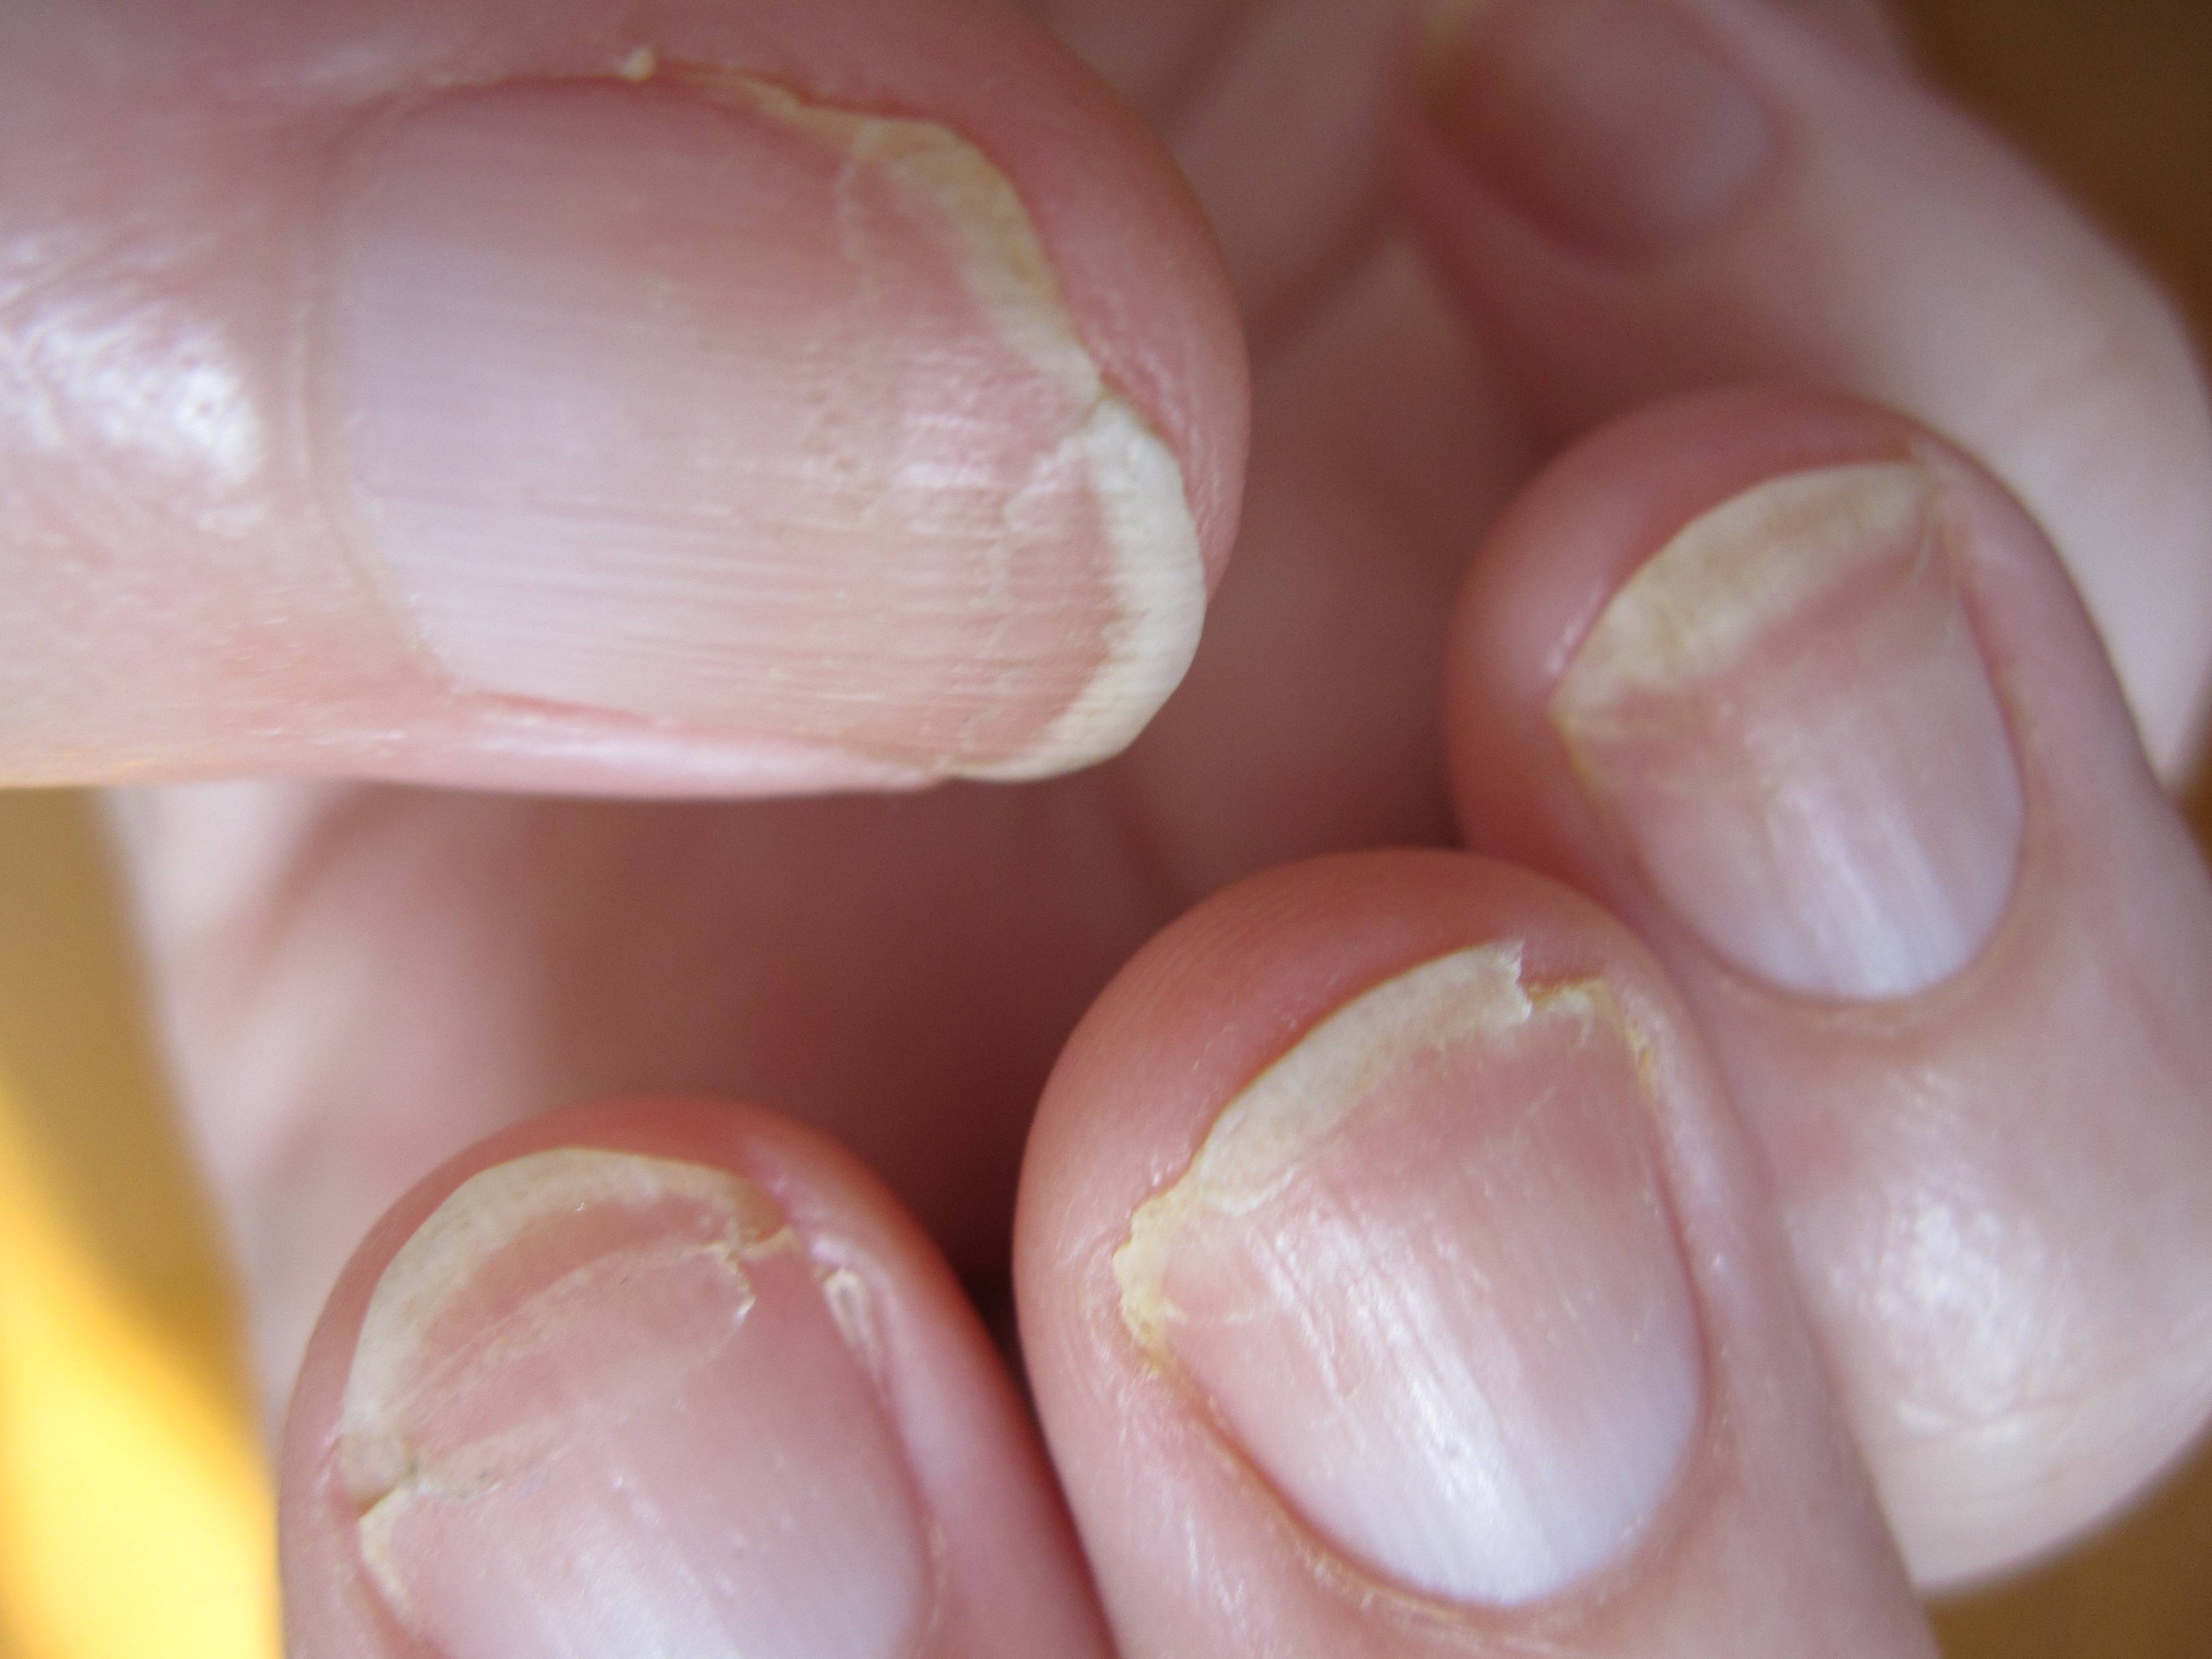 Слоятся ногти гель. Онихорексис, ониходистрофия. Ониходистрофия - онихолизис.. Ониходистрофия (дистрофия ногтей). Онихошизис слоятся ногти.